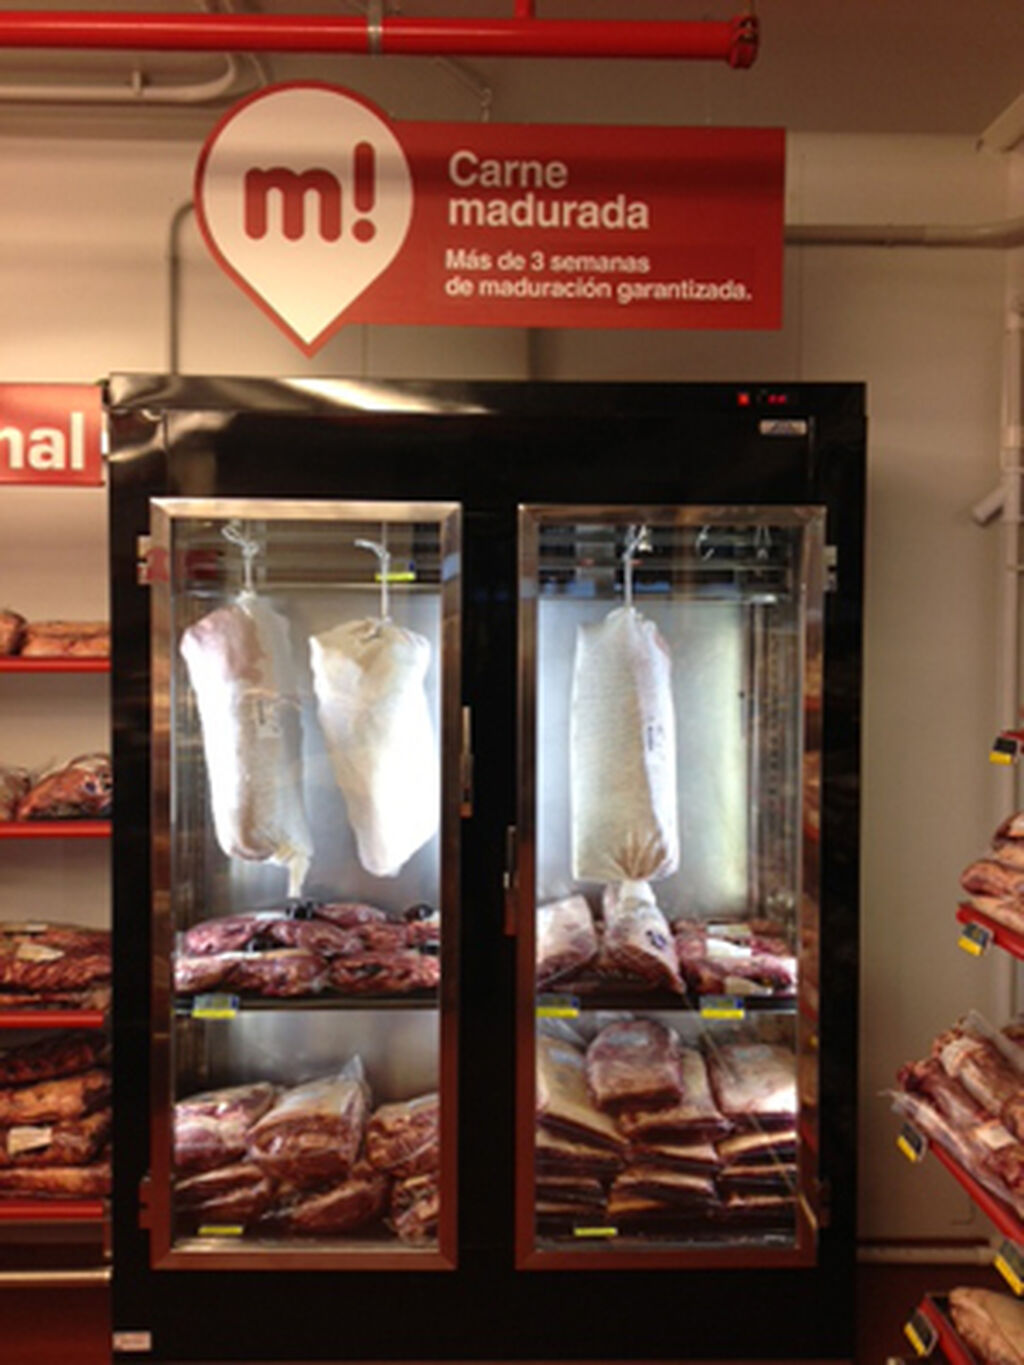 Y dentro de la zona de refrigerados... nueva sección de carne madurada. Más de tres semanas de maduración garantizada.